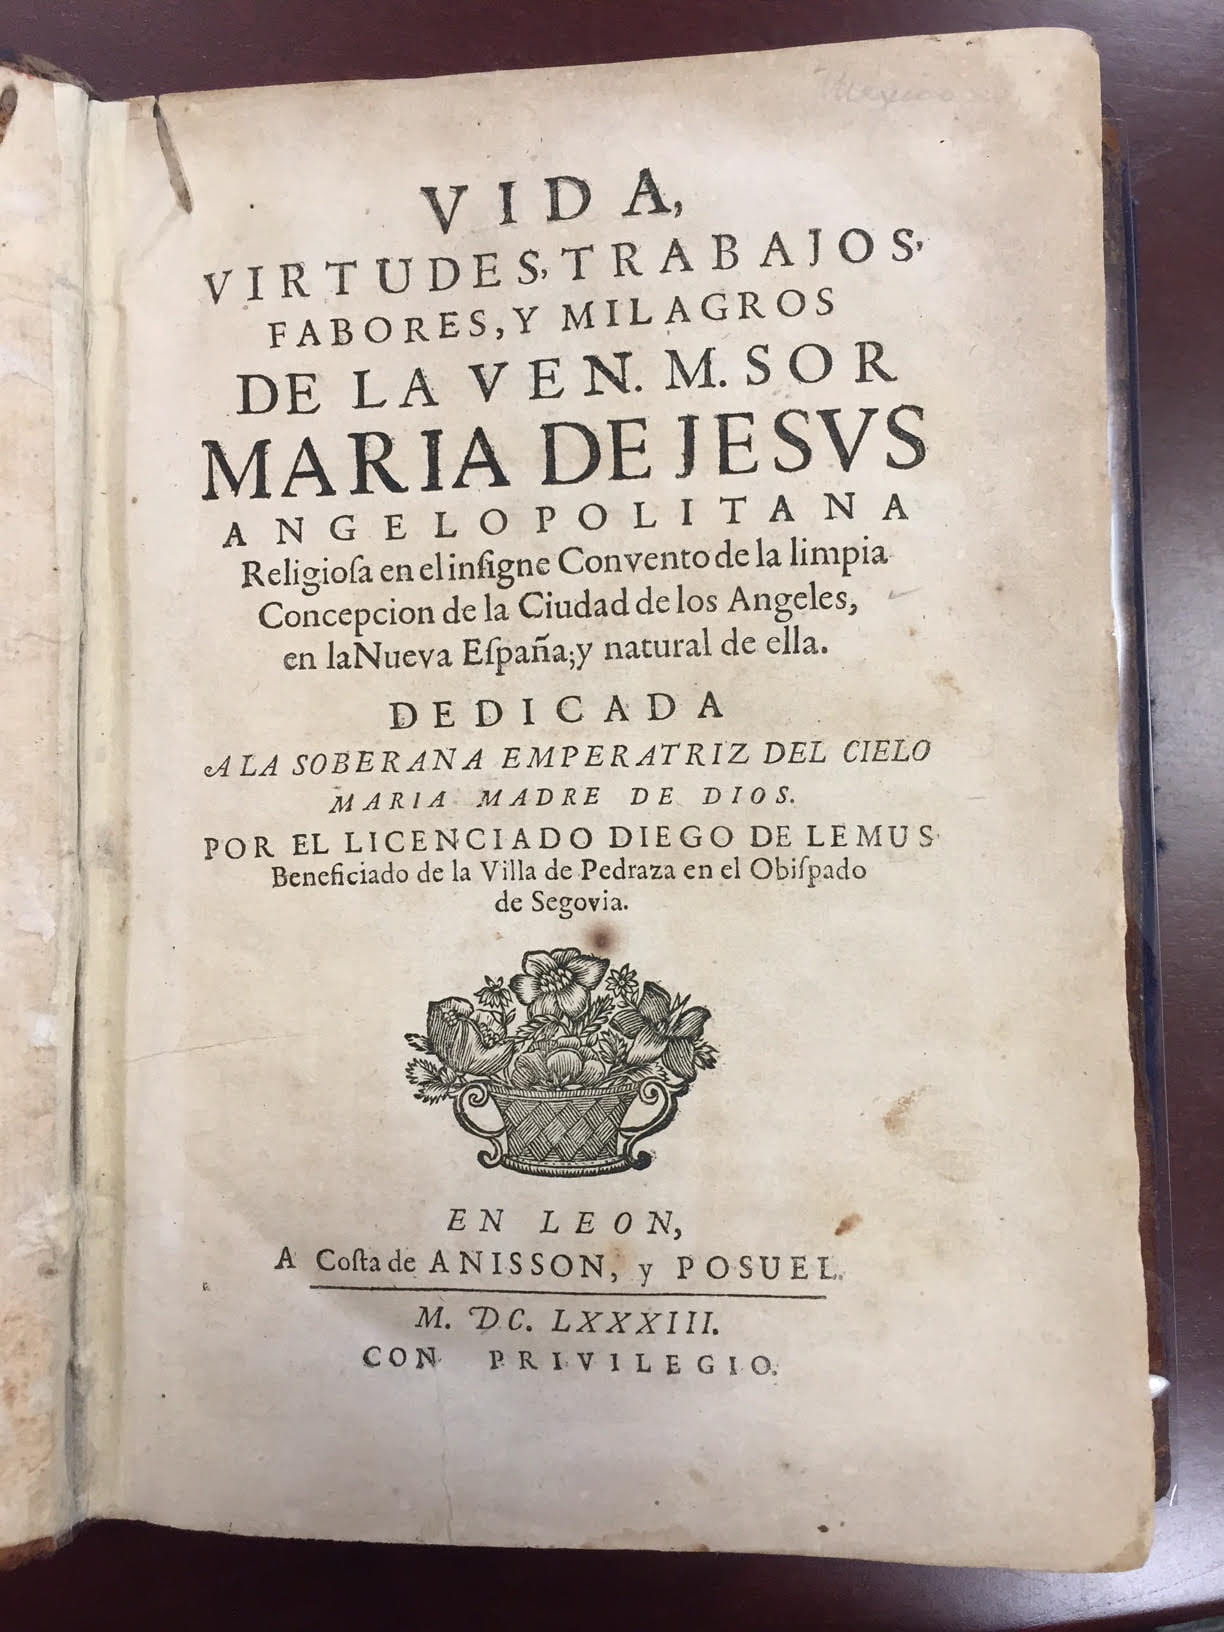 The Vida of María de Jesús